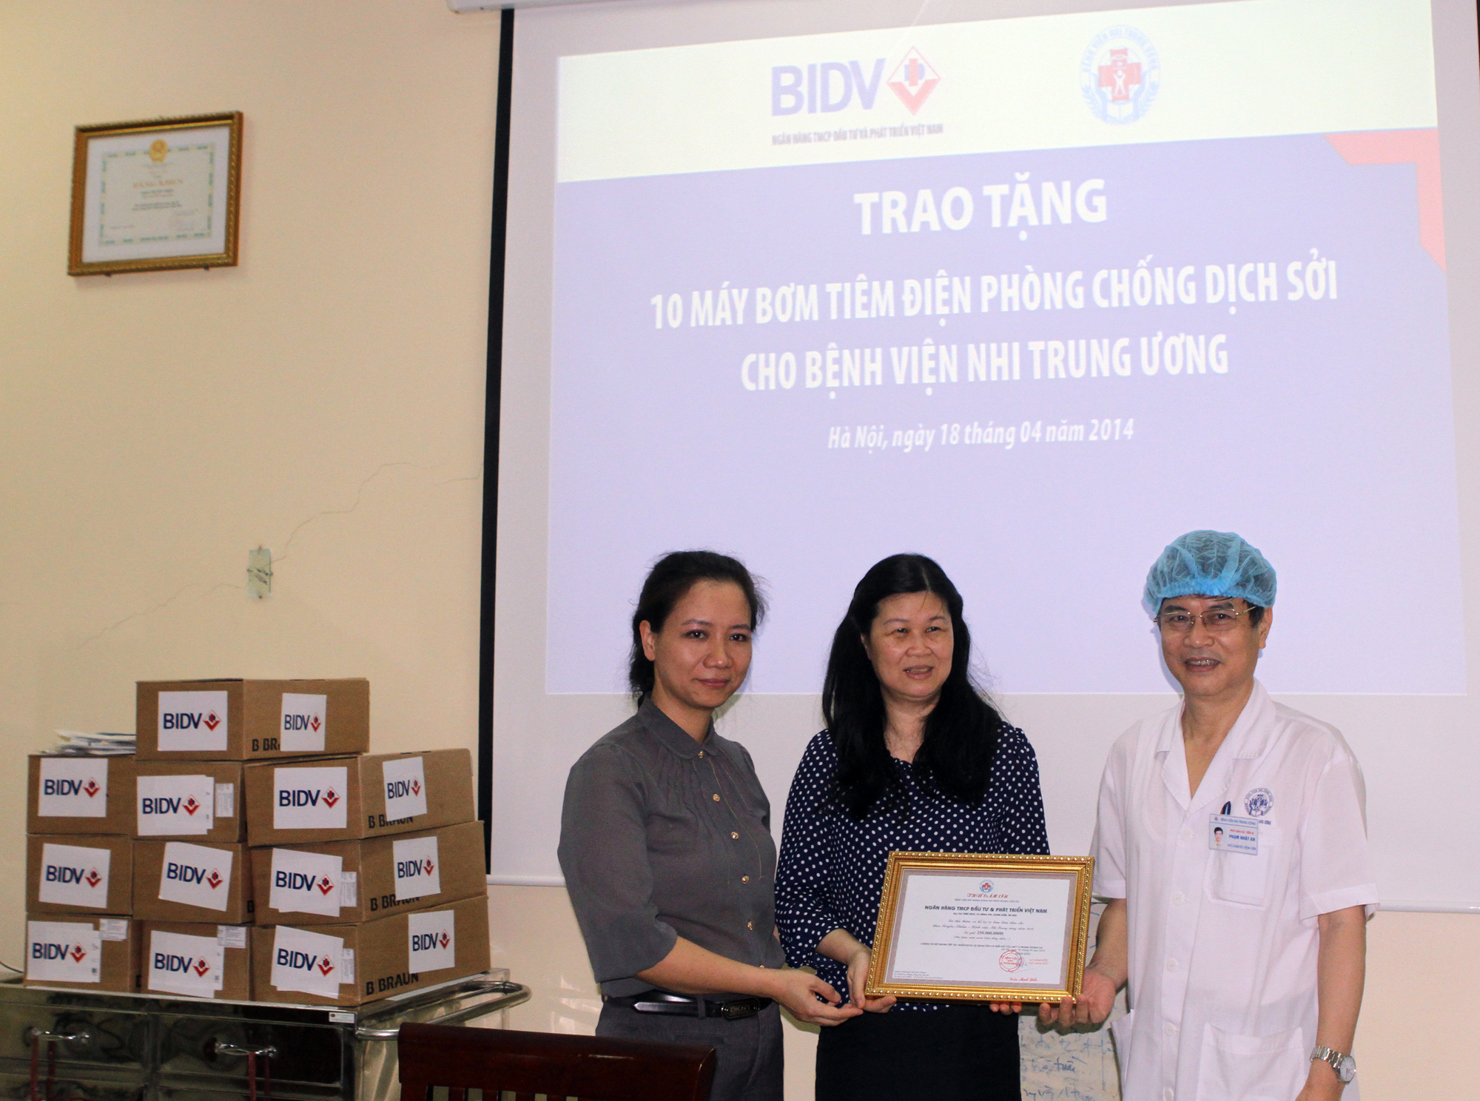 BIDV tài trợ 10 máy bơm tiêm điện cho Bệnh viện Nhi Trung ương. Nguồn: bidv.com.vn